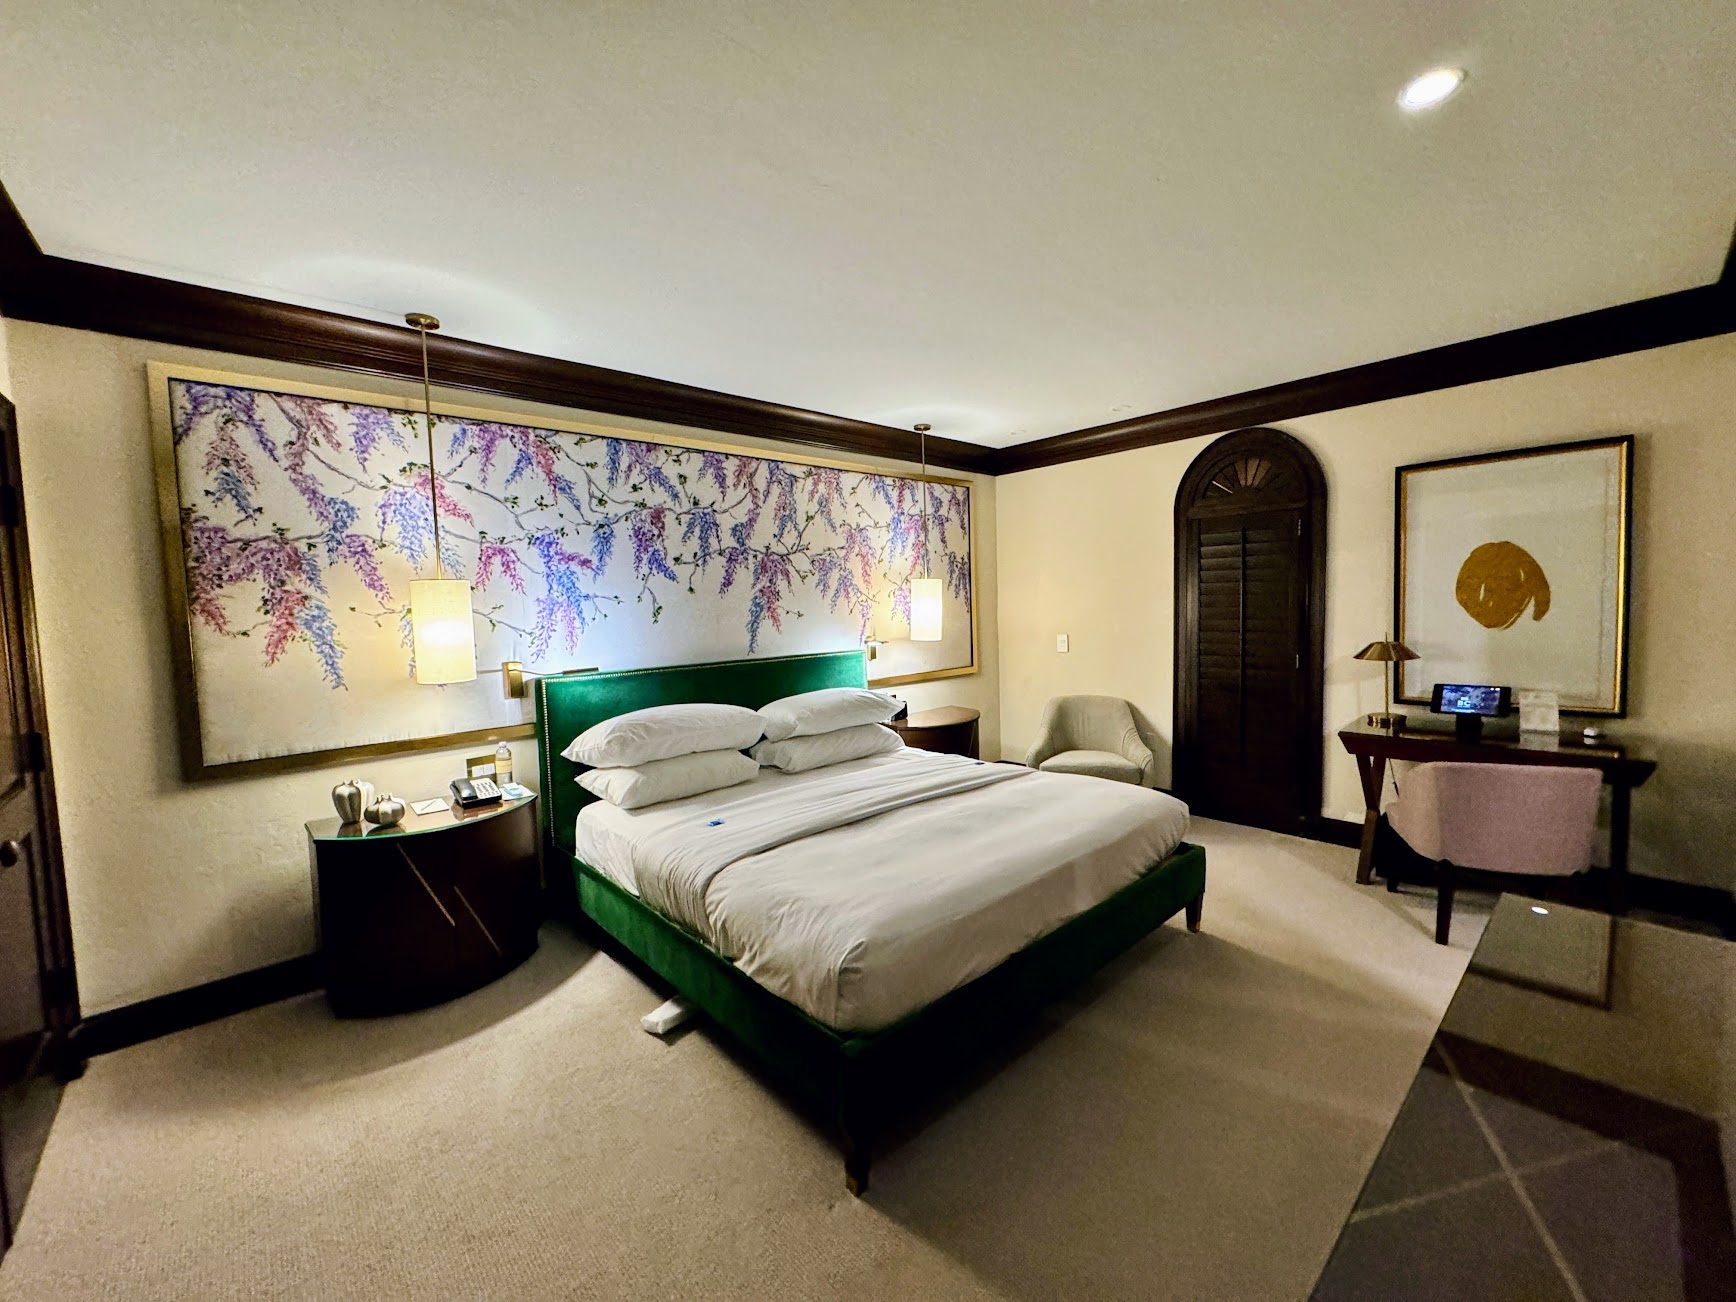 Brazilian Court Hotel LHW Suite bedroom